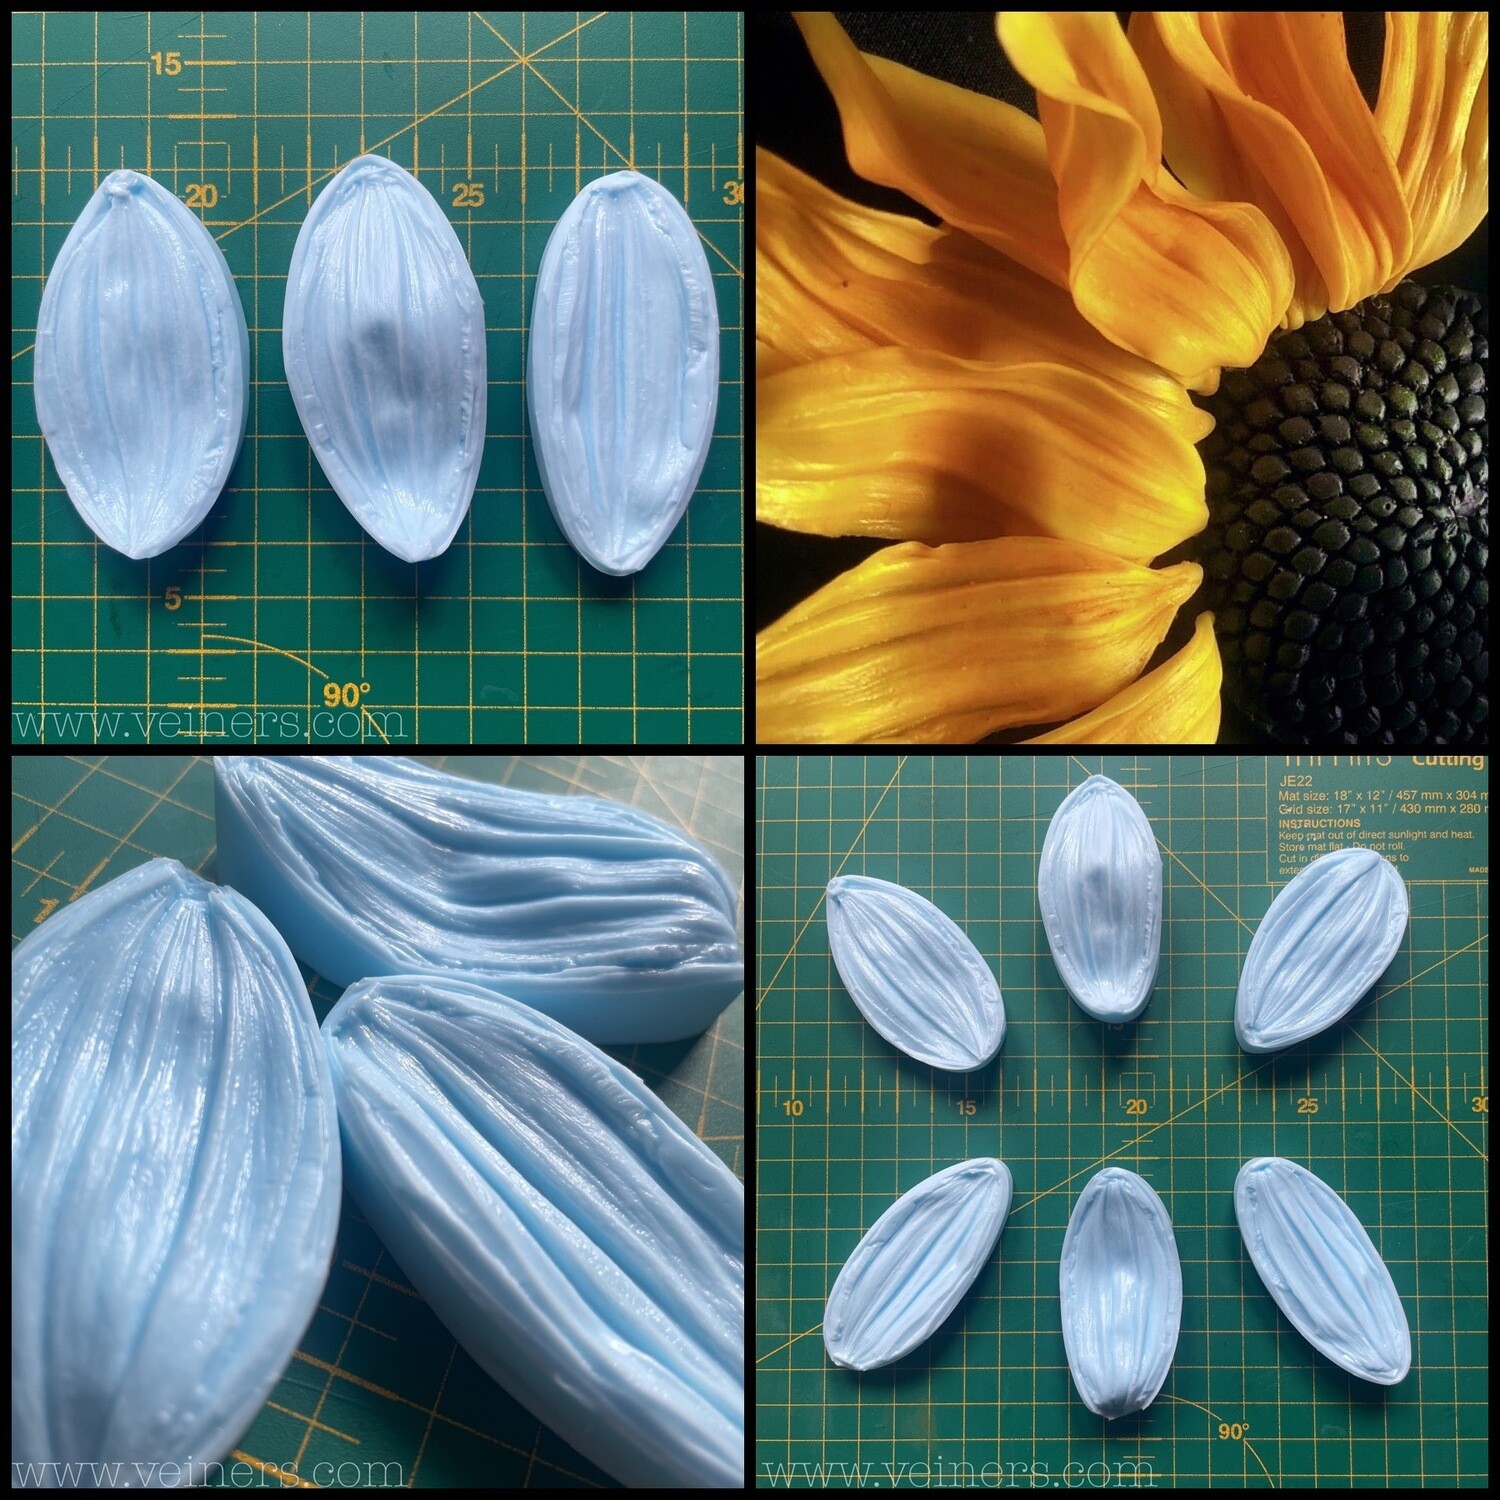 Sunflower Petals, L, 3x VEINER Set + 3 Cutter Set ( Optional)